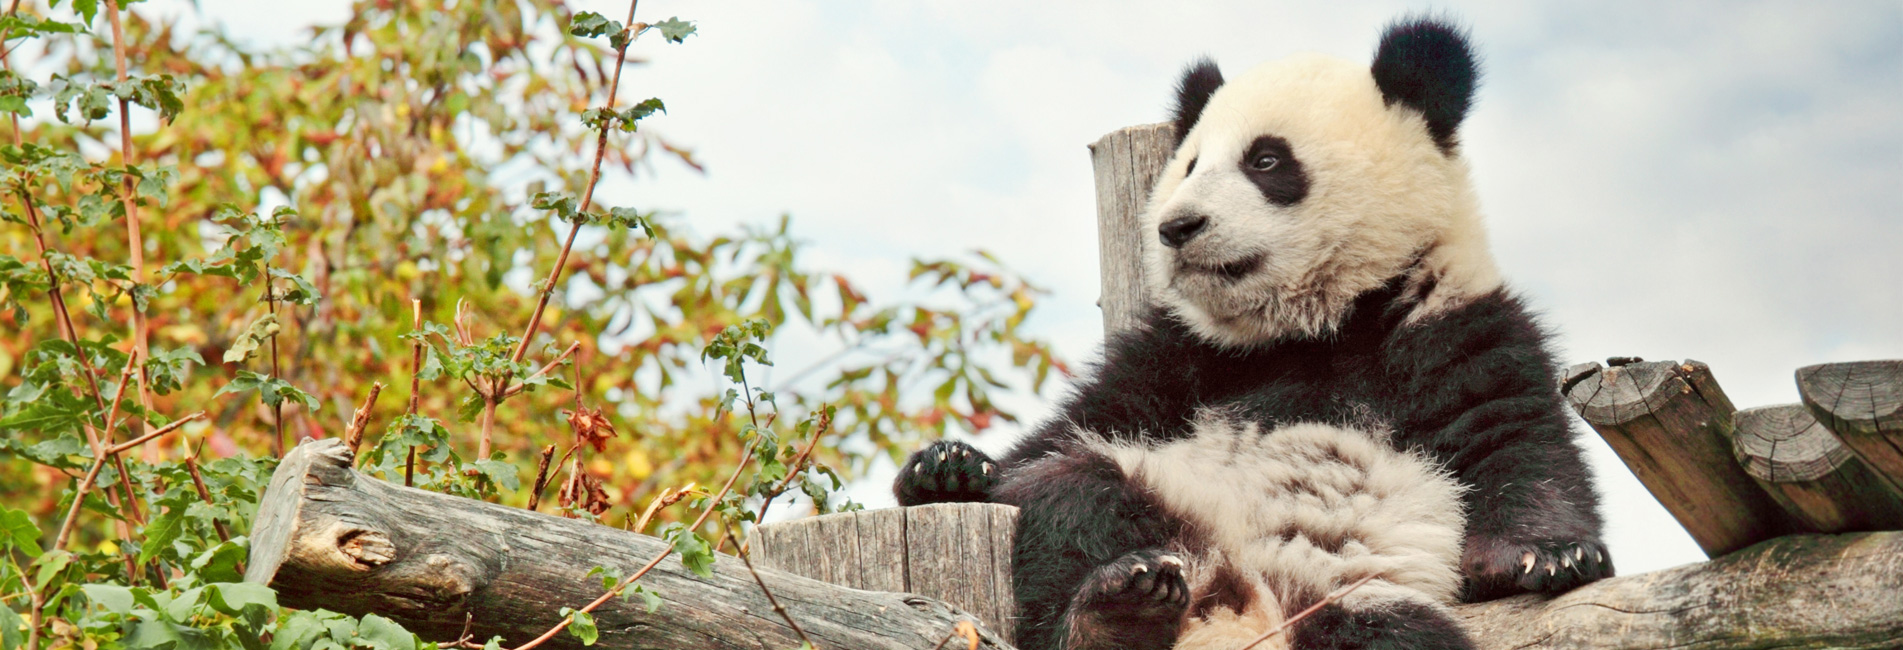 panda tours in china